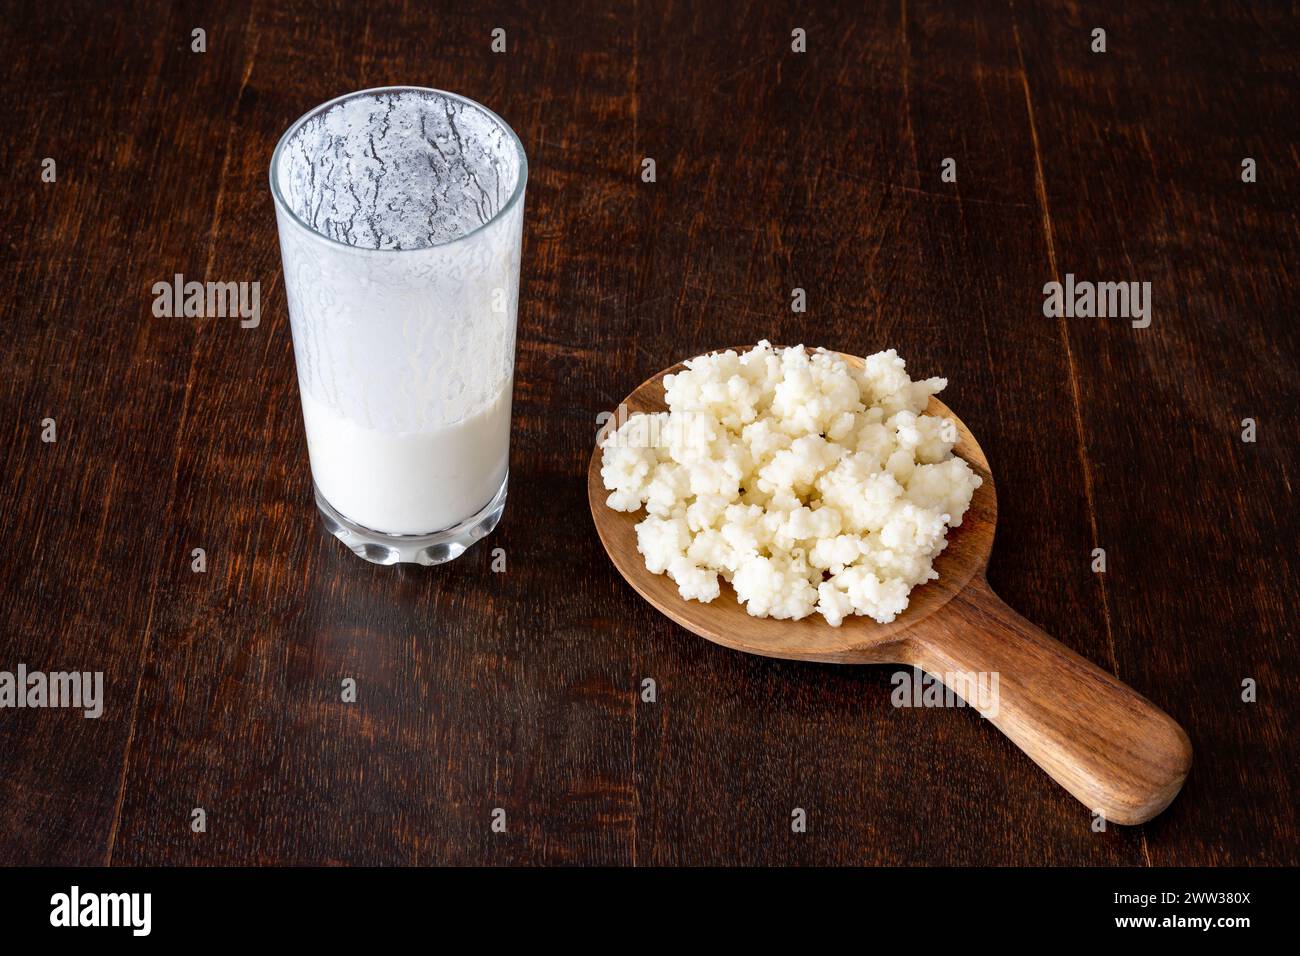 Grains de kéfir et boisson lactée fermentée isolés sur une table rustique en bois Banque D'Images